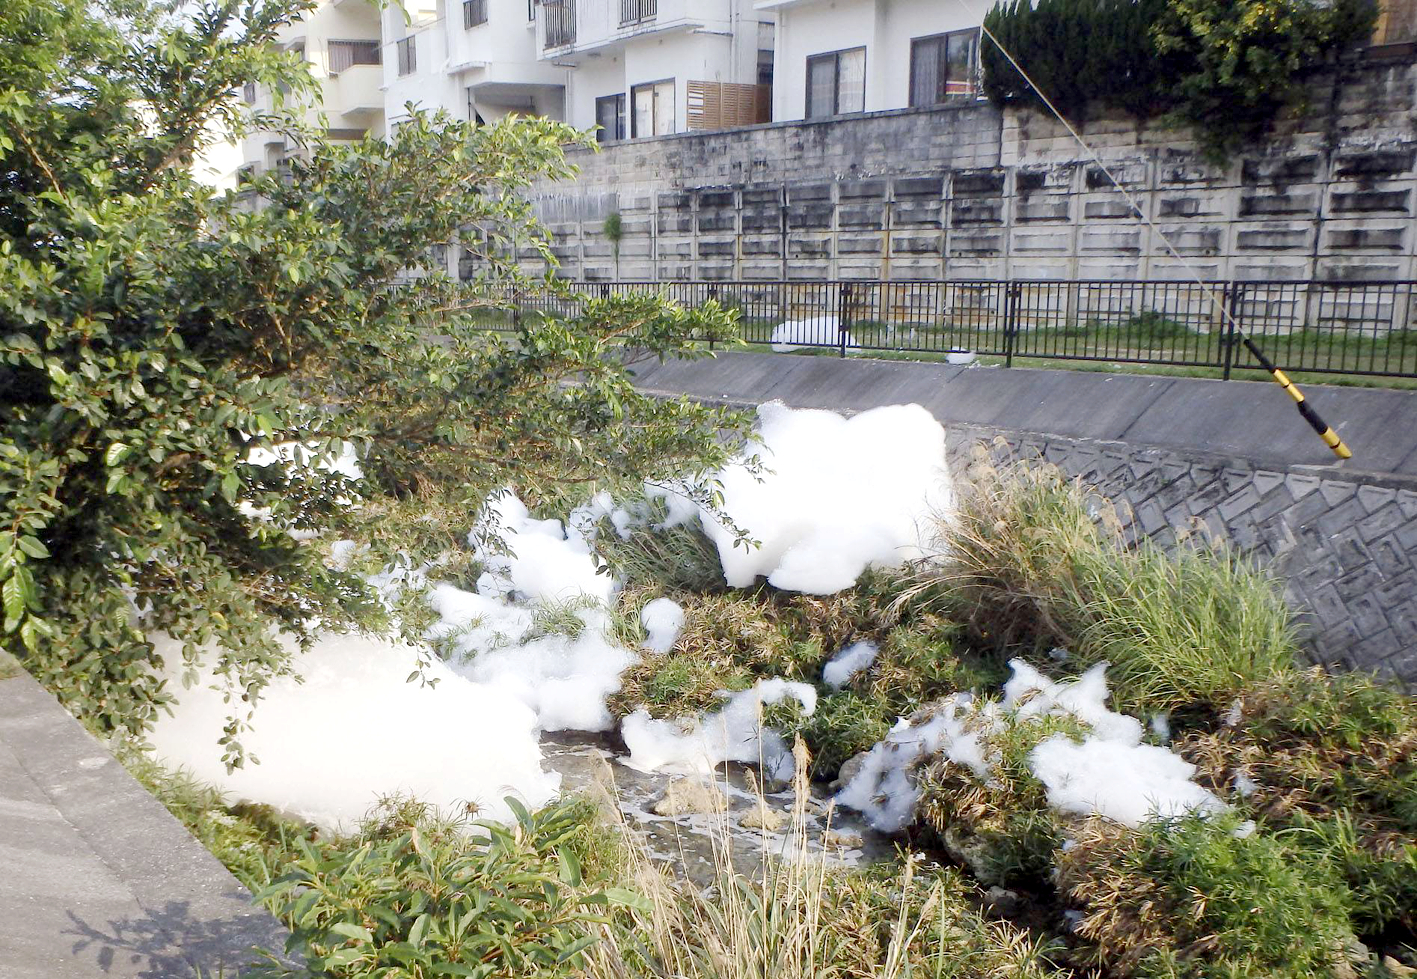 Bọt chữa cháy chứa hóa chất PFOS tràn ra từ một cơ sở của quân đội Mỹ, gây ô nhiễm nguồn nước tại một khu dân cư ở thành phố Ginowan, tỉnh Okinawa vào tháng 4/2020 - ẢNH: KYODO NEWS